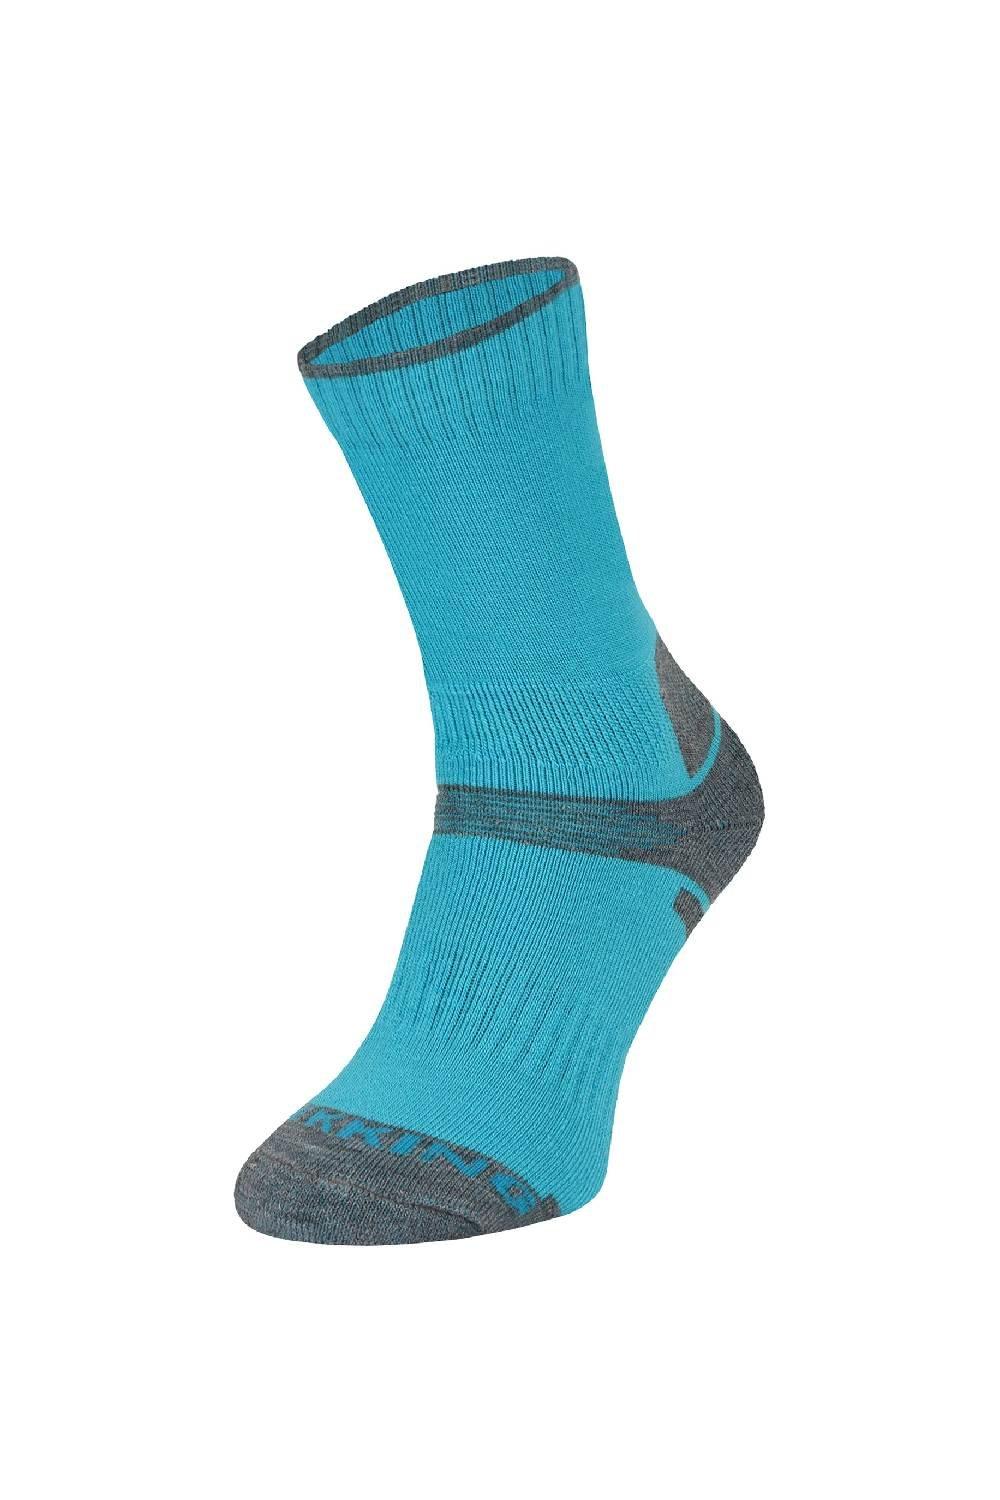 Носки для походов из мериносовой шерсти | Дышащие носки против волдырей COMODO, синий 1 пара детские защитные налокотники для катания на велосипеде